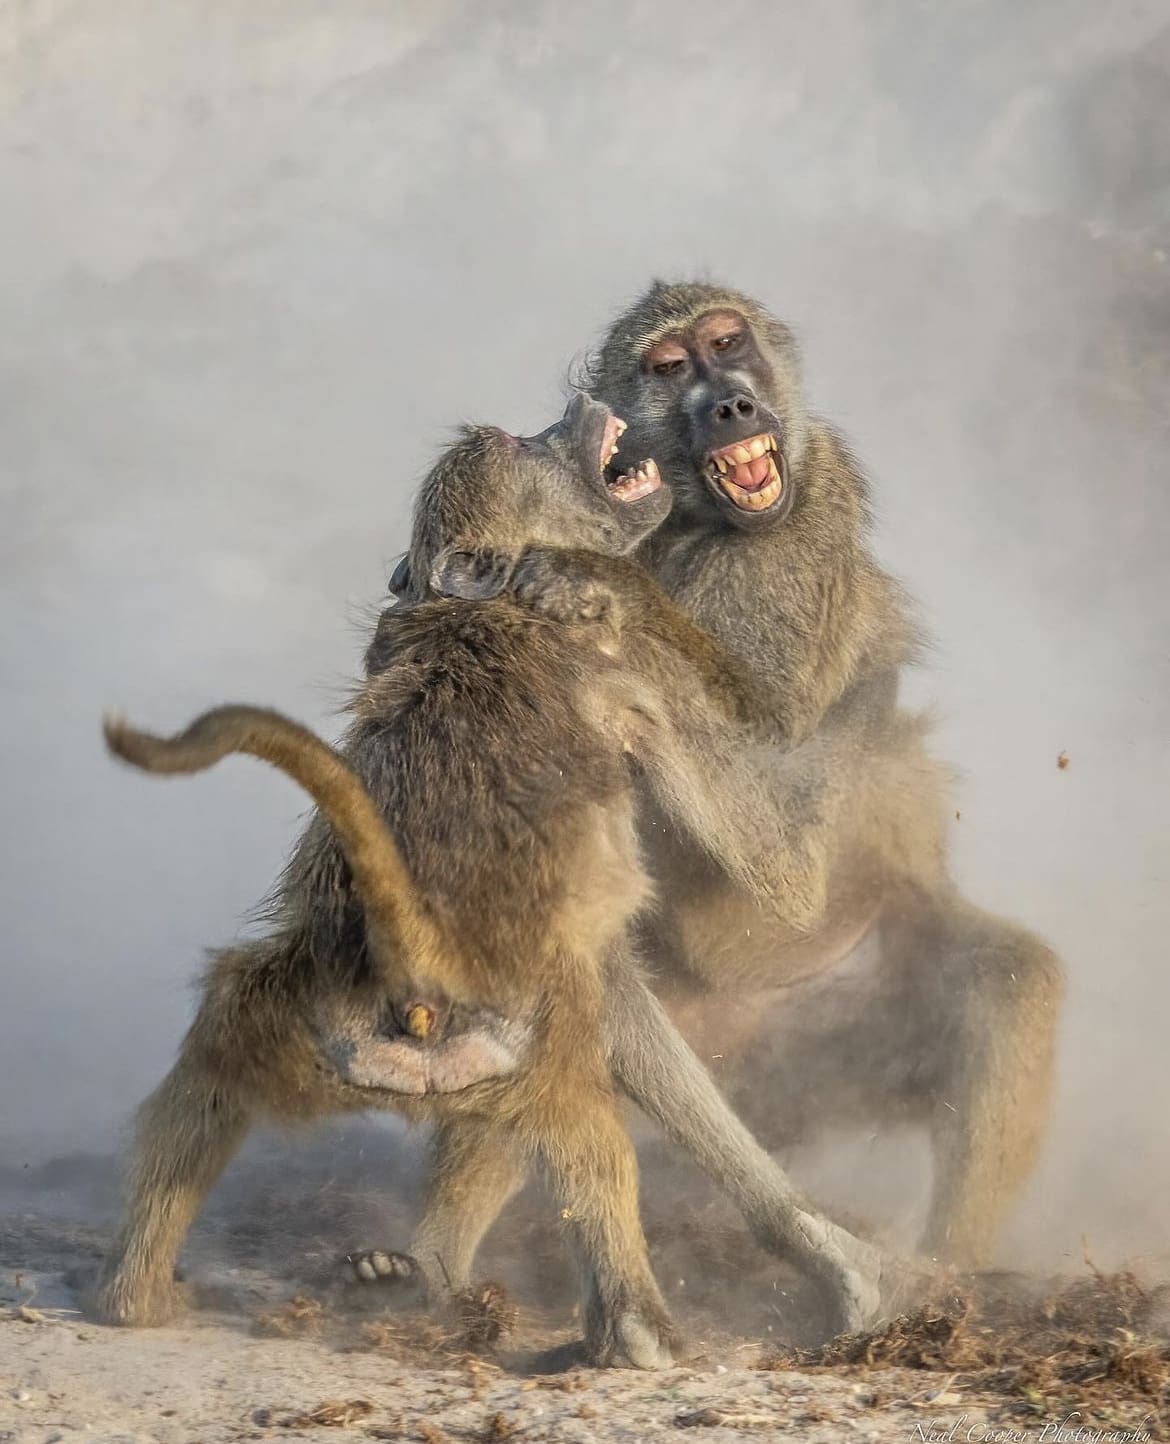 Monkeys fighting in Africa